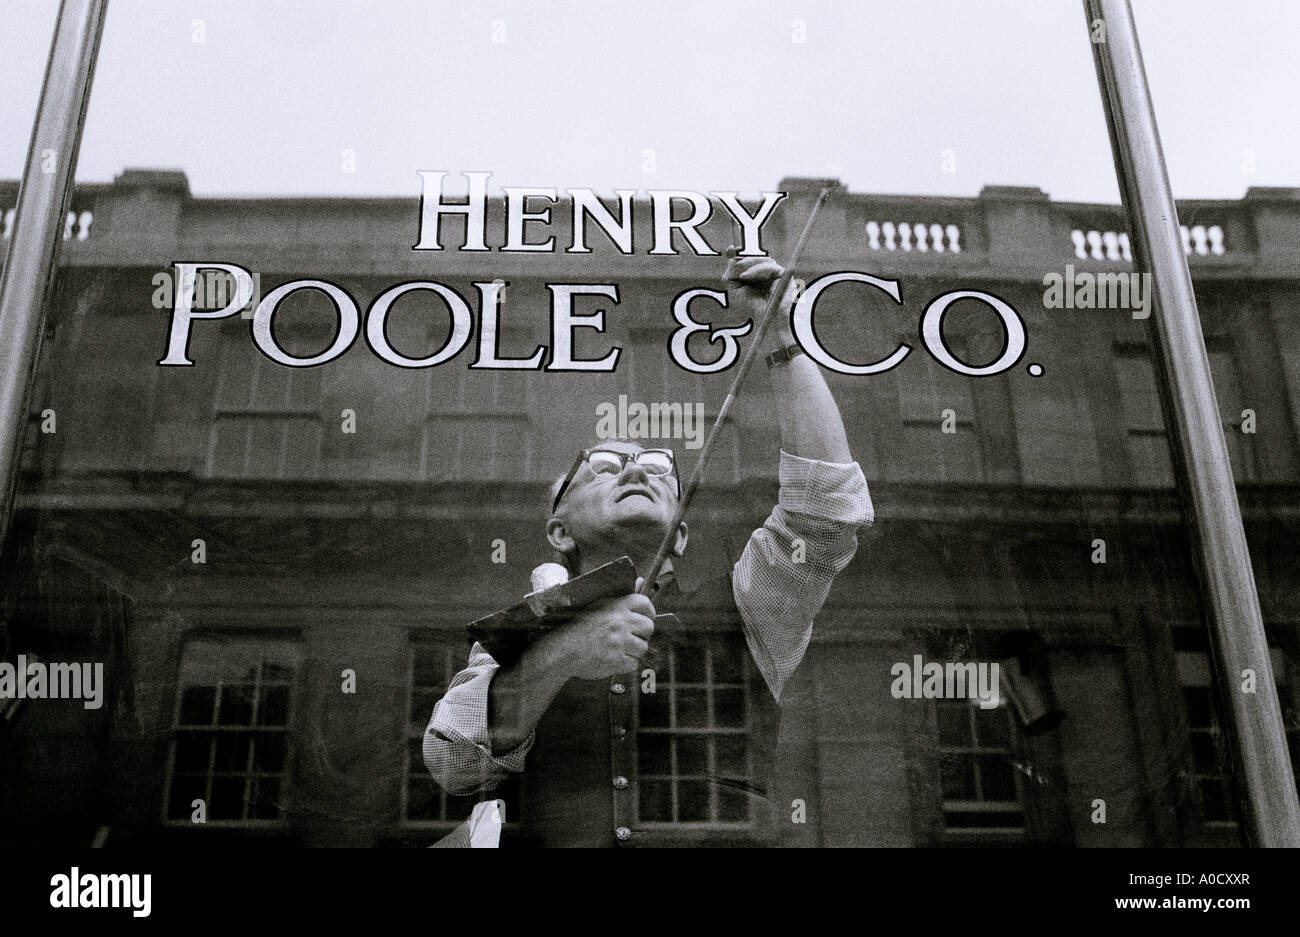 Henry Poole Sarto nel Savile Row a Mayfair a Londra in Inghilterra in Gran Bretagna nel Regno Unito Regno Unito. Ricchezza ricchi ricchi di denaro abbigliamento moda Foto Stock